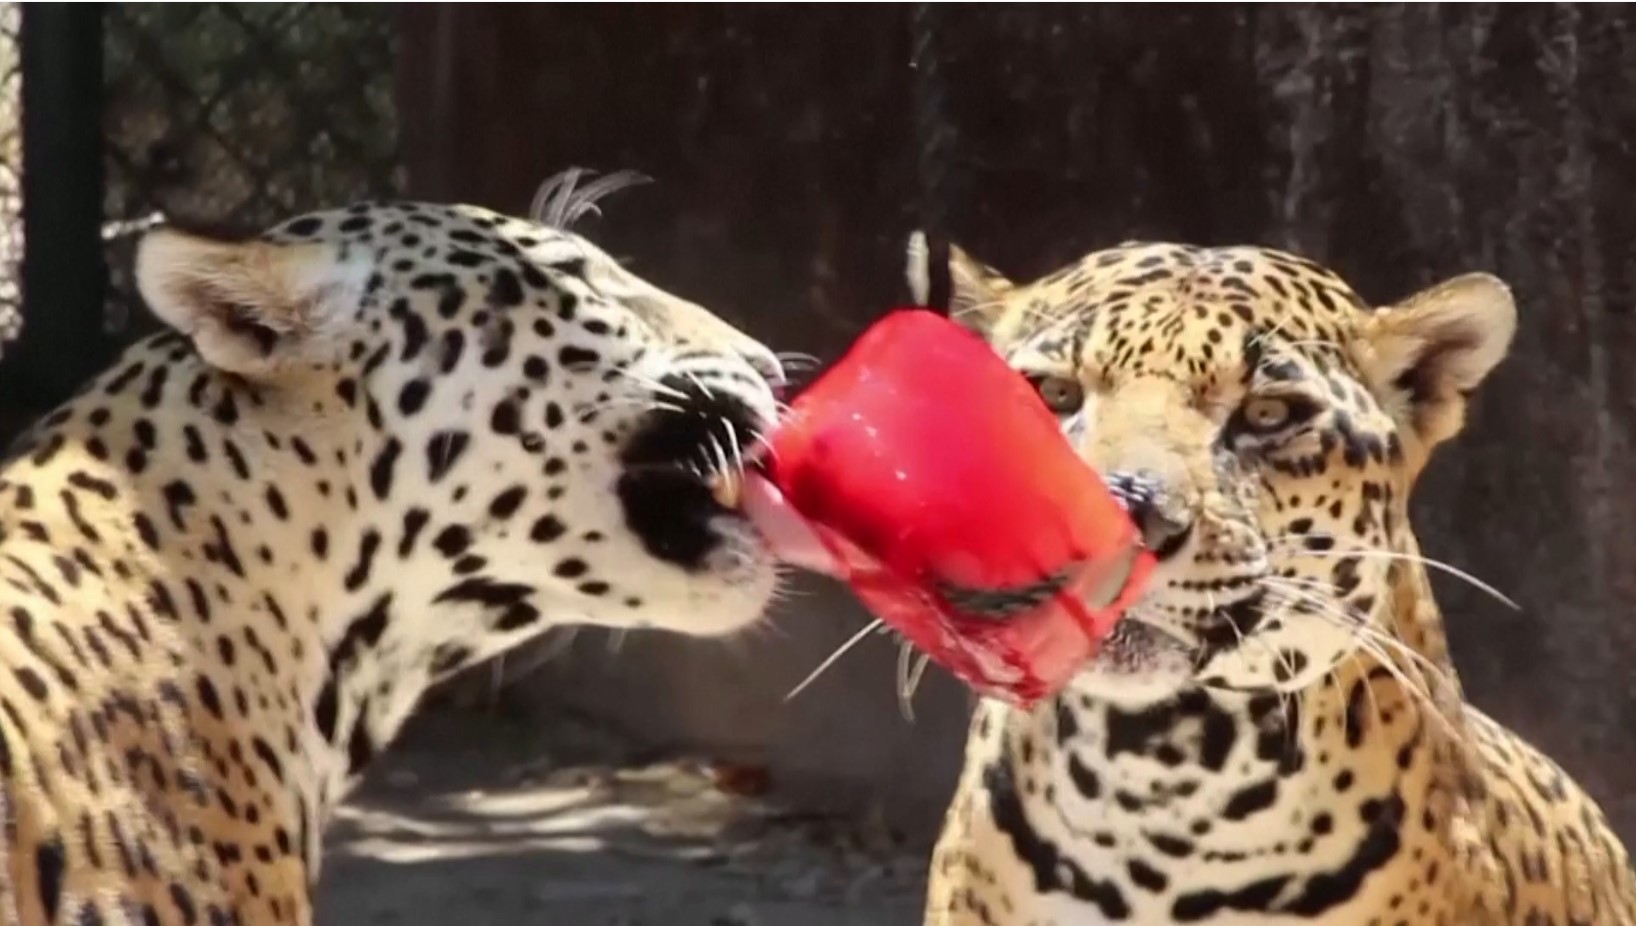 Ледяное угощение и грязевые ванны: как звери в зоопарке в Мексике переживают жару